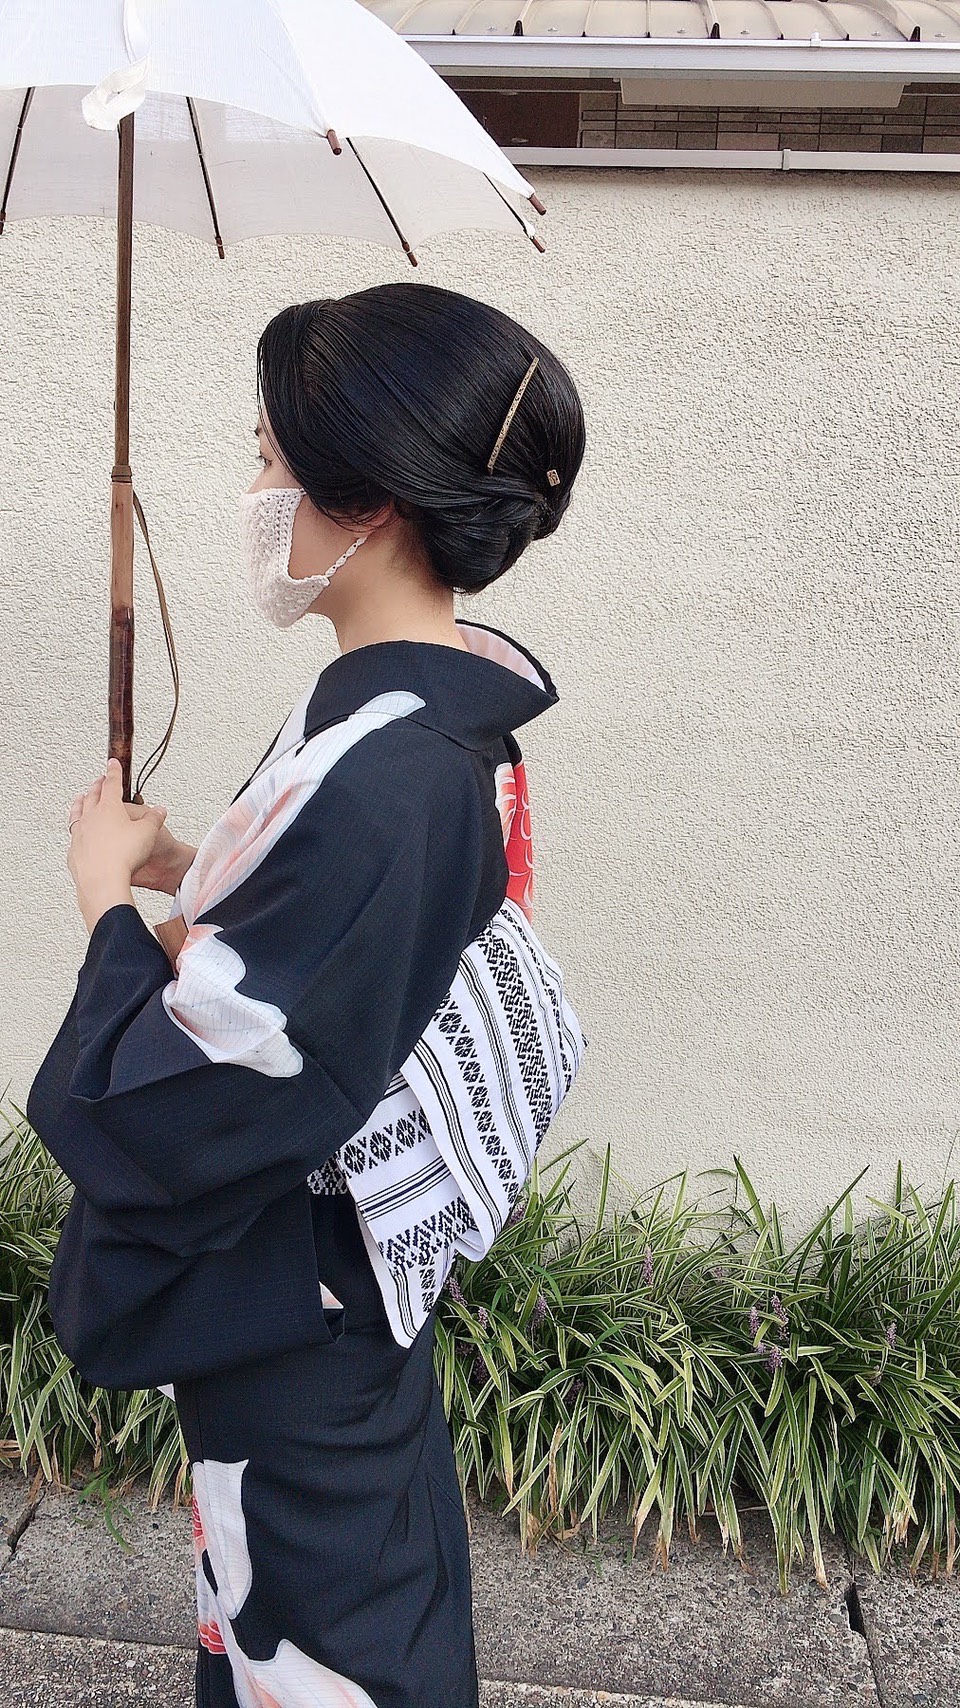 和髪を自分で結うために セルフ和髪のいろは 着物に合うヘアスタイルって 着物 和 京都に関する情報ならきものと